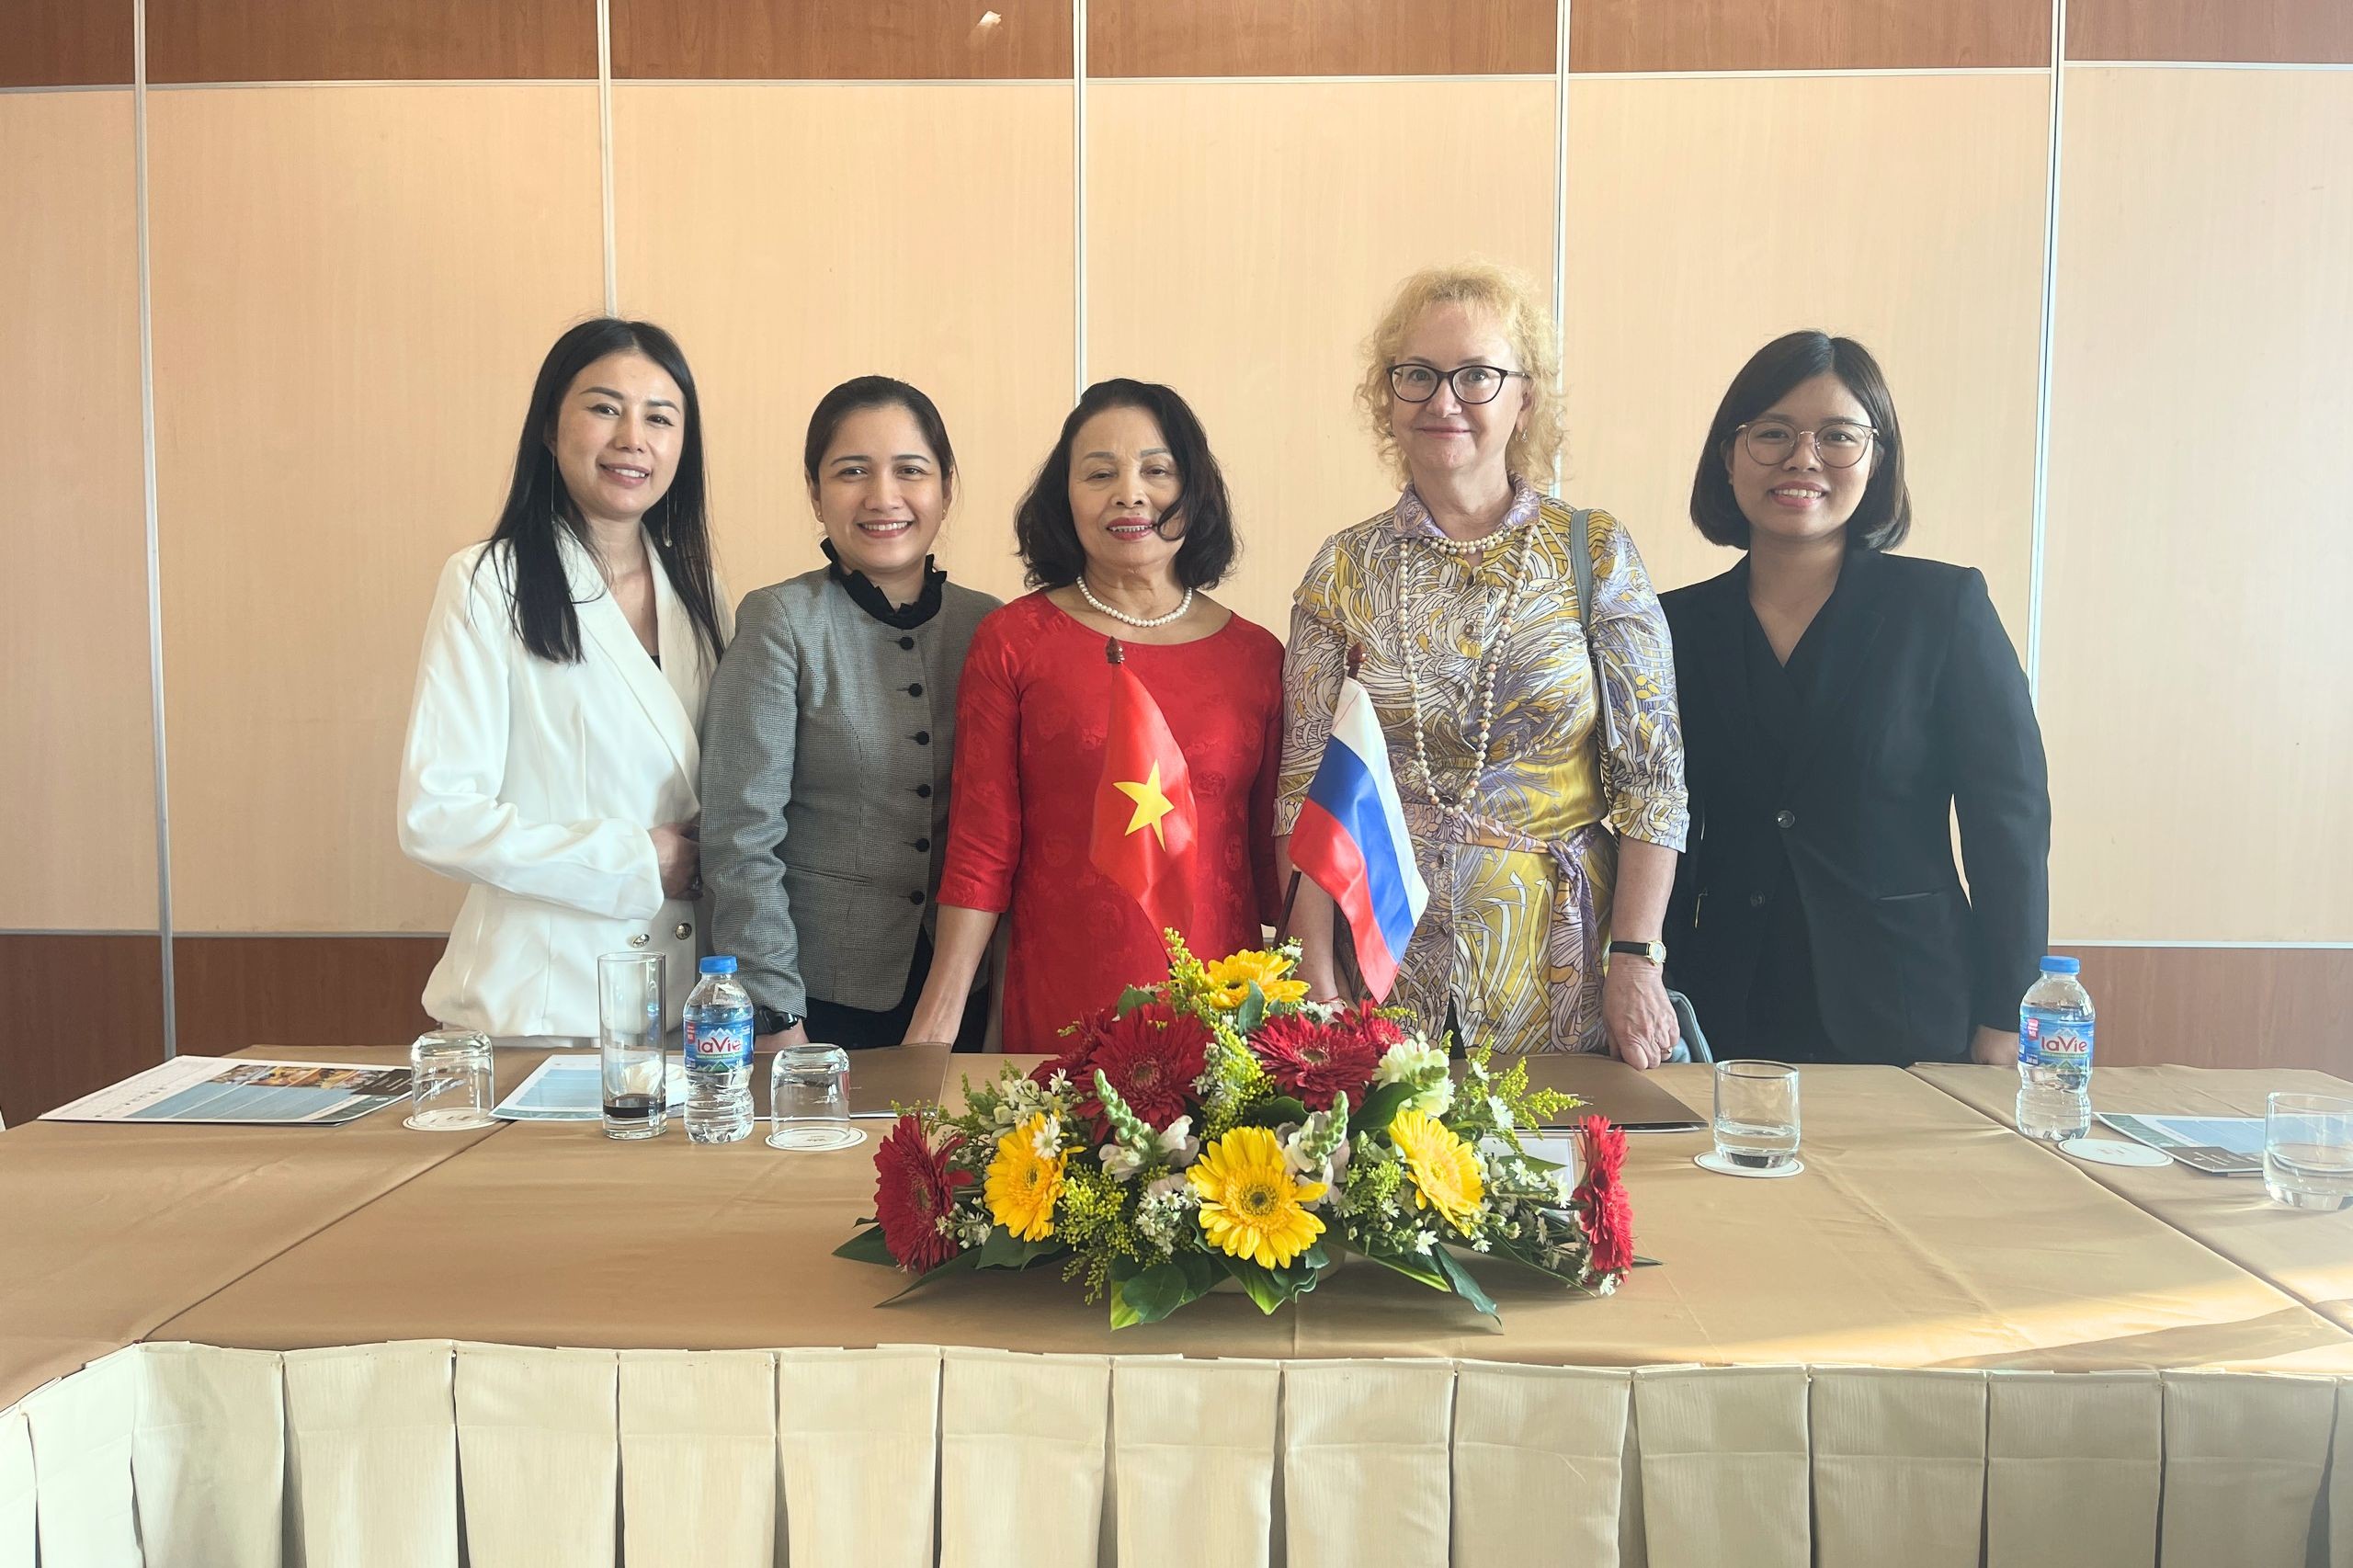 Hội thảo “Sản phẩm Nga trong khách sạn Việt Nam lần 2": Vũng Tàu - Điểm đến hợp tác kinh doanh du lịch, thương mại quốc tế